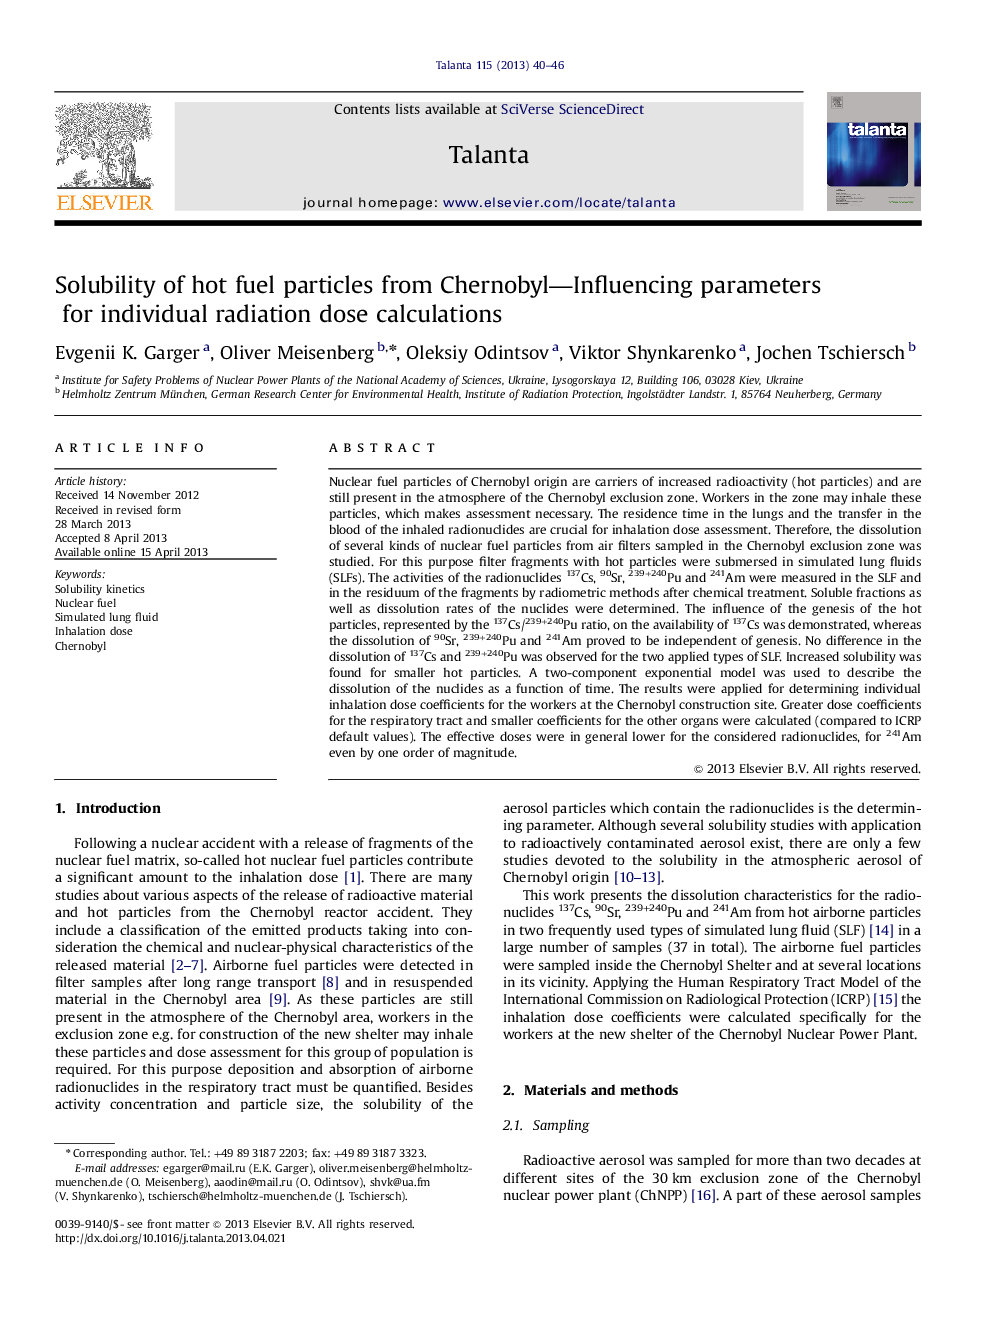 حلالیت ذرات داغ از پارامترهای تحت تاثیر چرنوبیل برای محاسبه دوز تابش فردی 